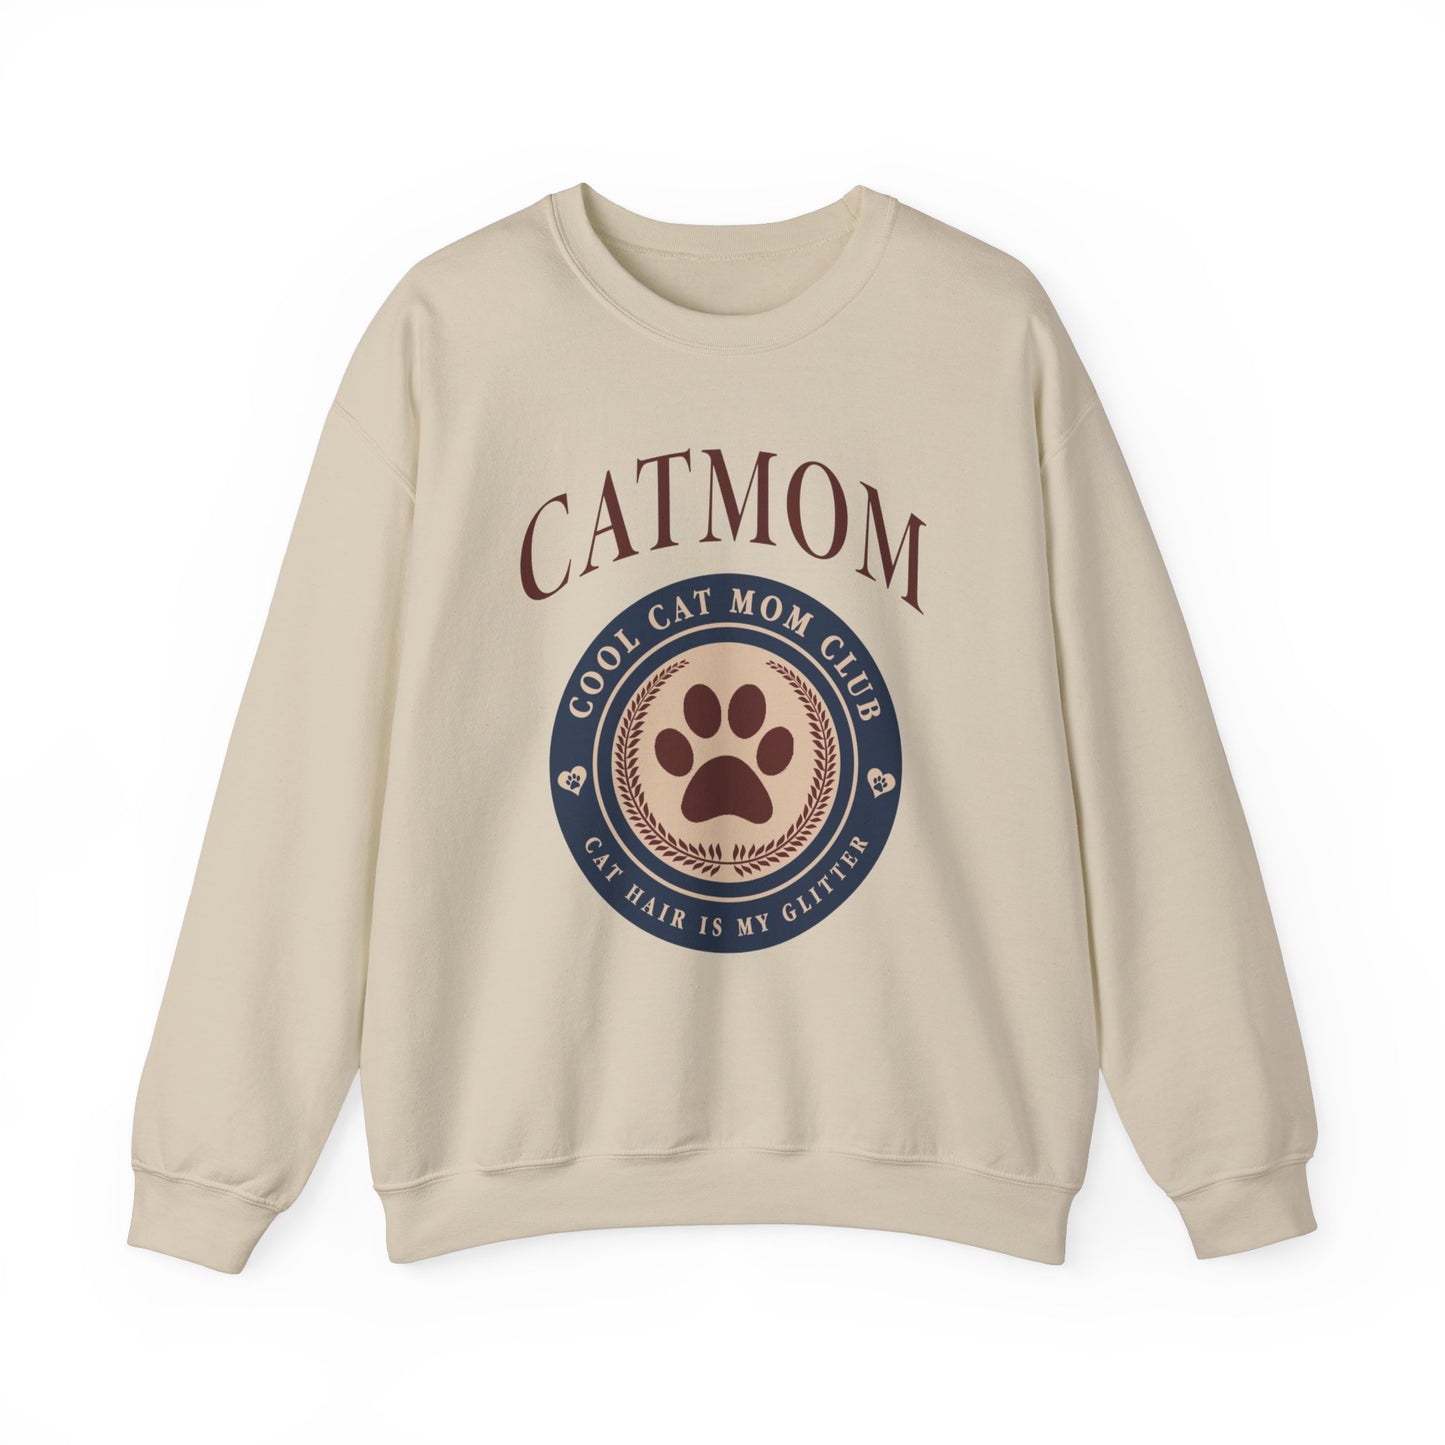 Cat Mom Pullover für Katzenbesitzer